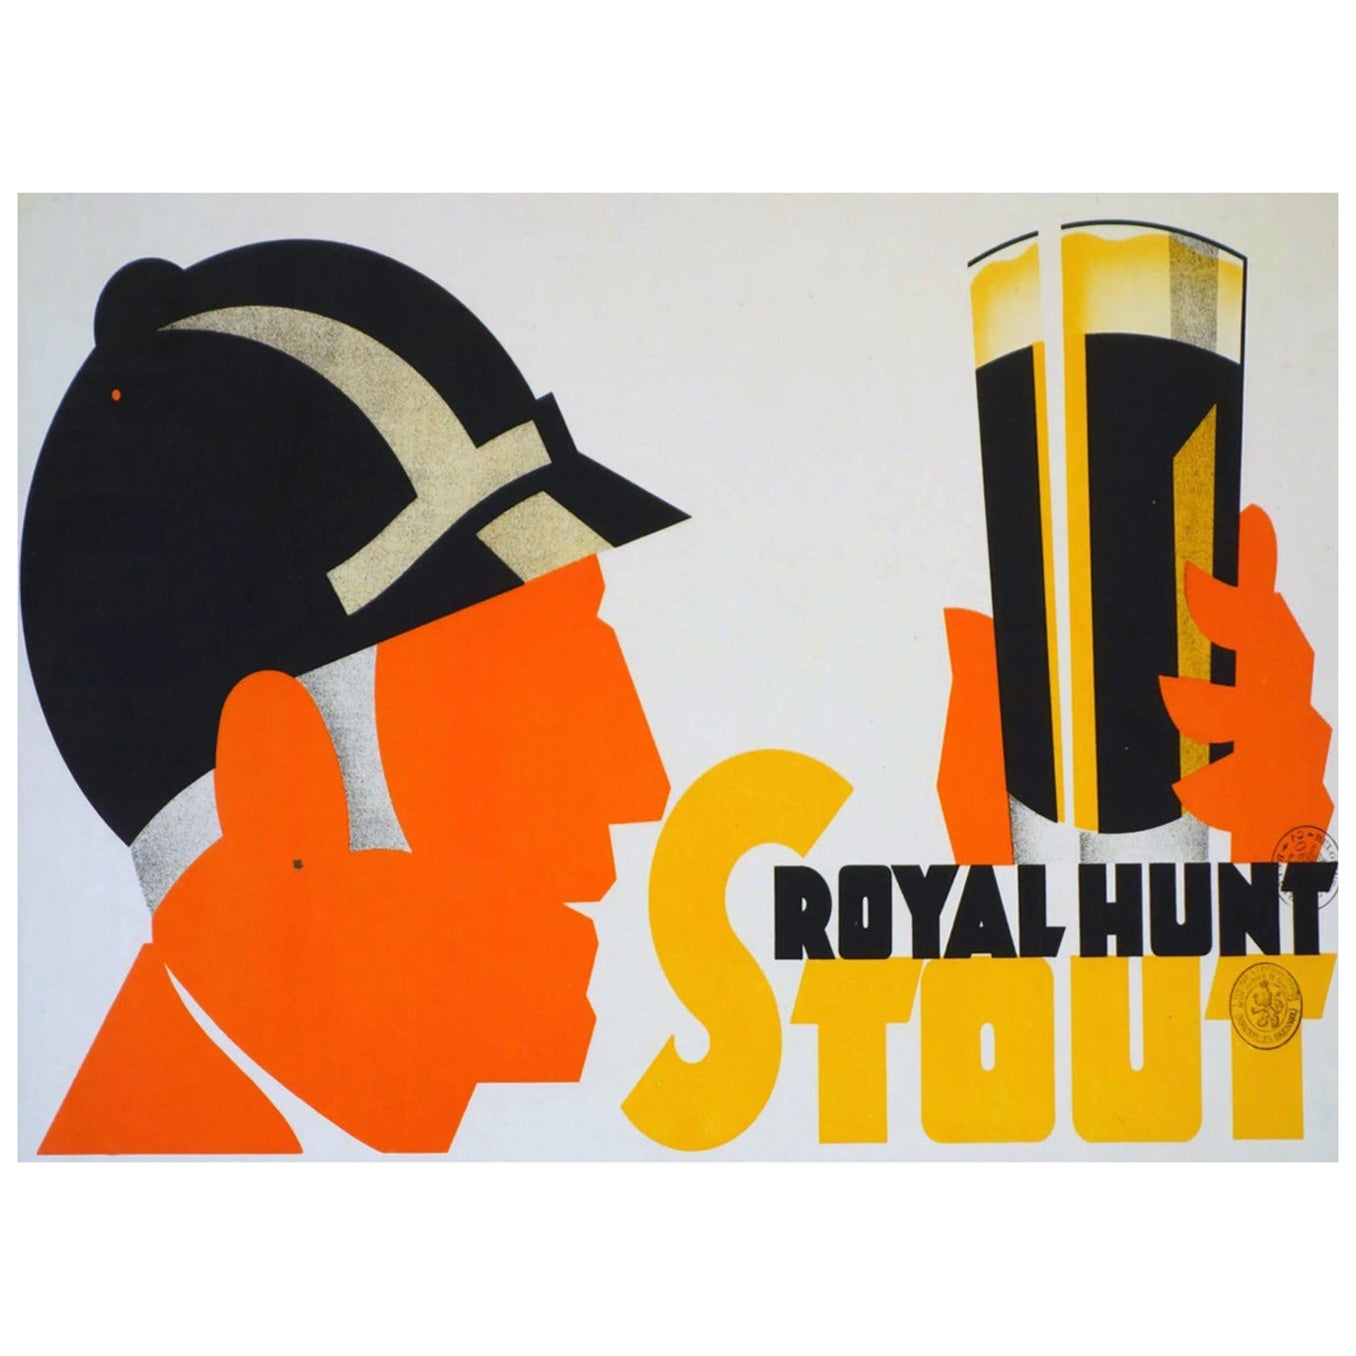 1930 Royal Hunt Stout Original Vintage Poster